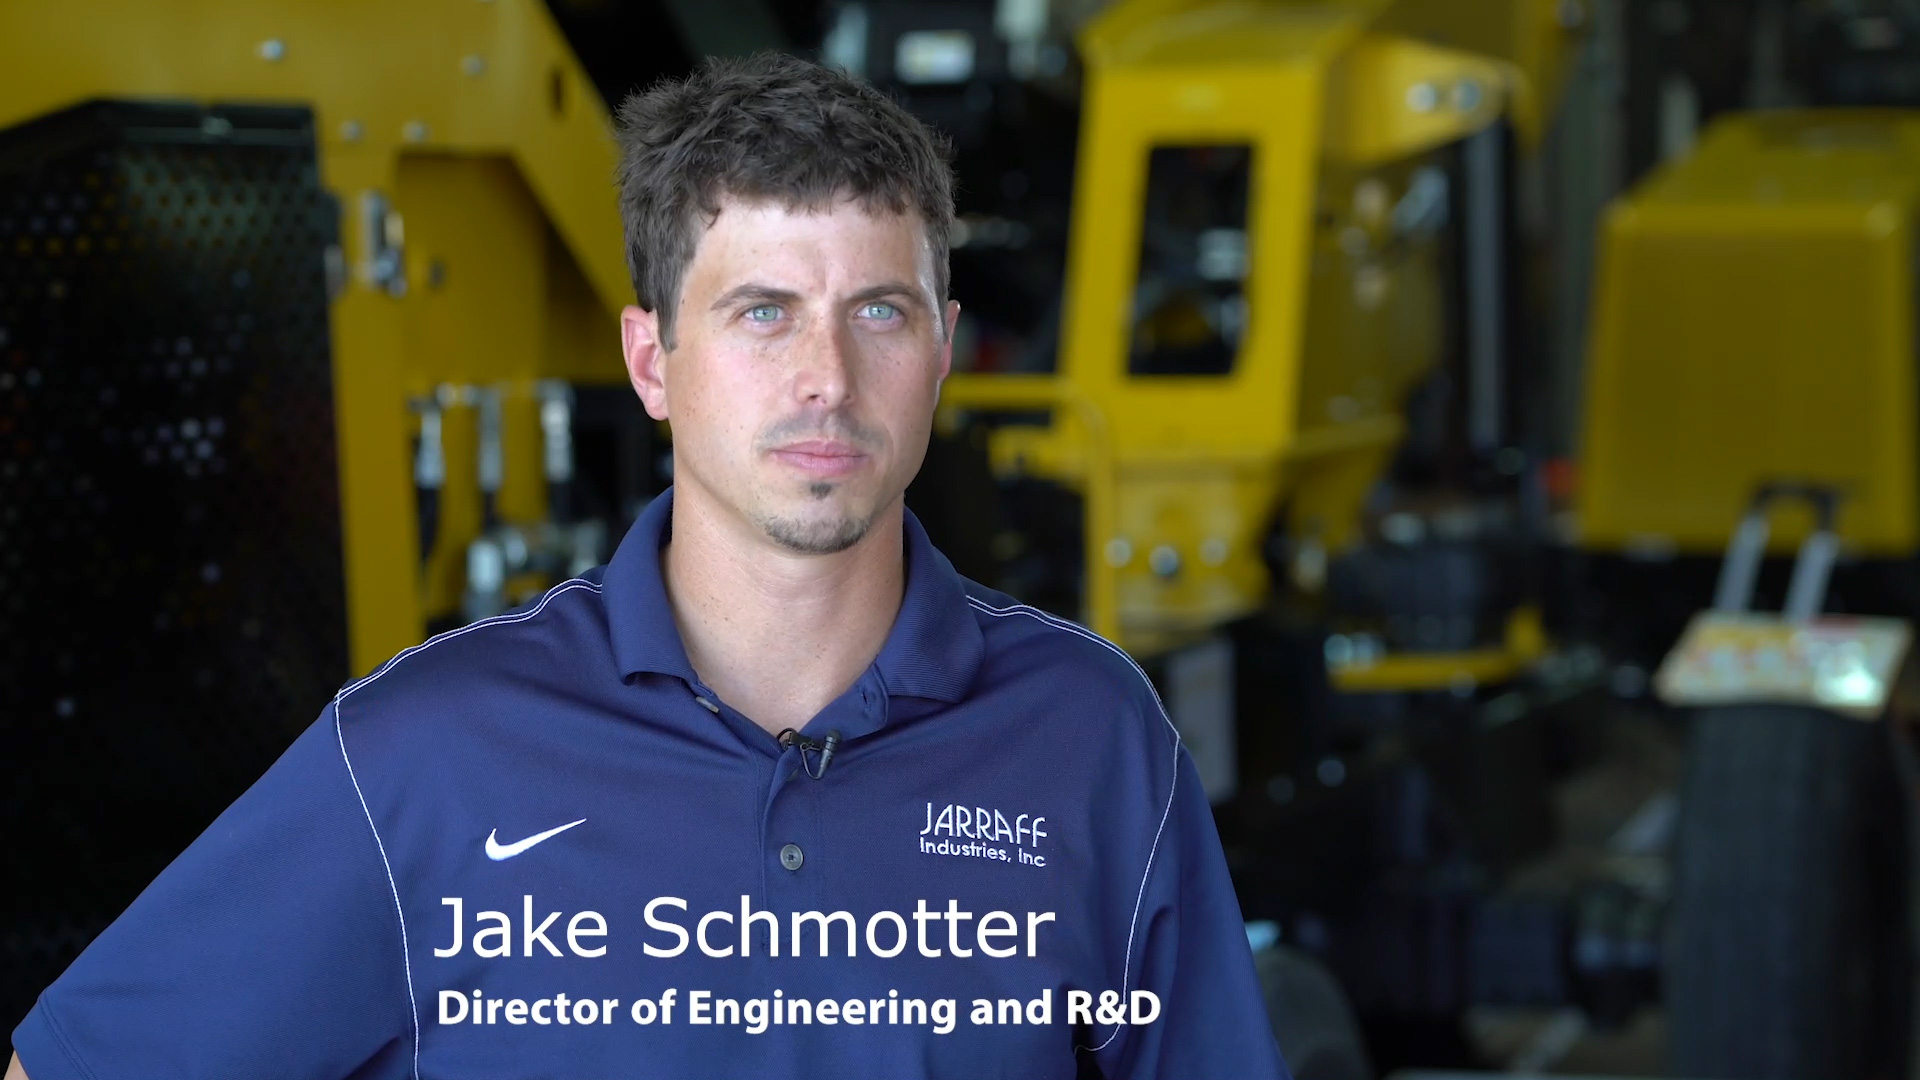 Jake Schmotter, Diretor de Engenharia e P&D, Jarraff Industries